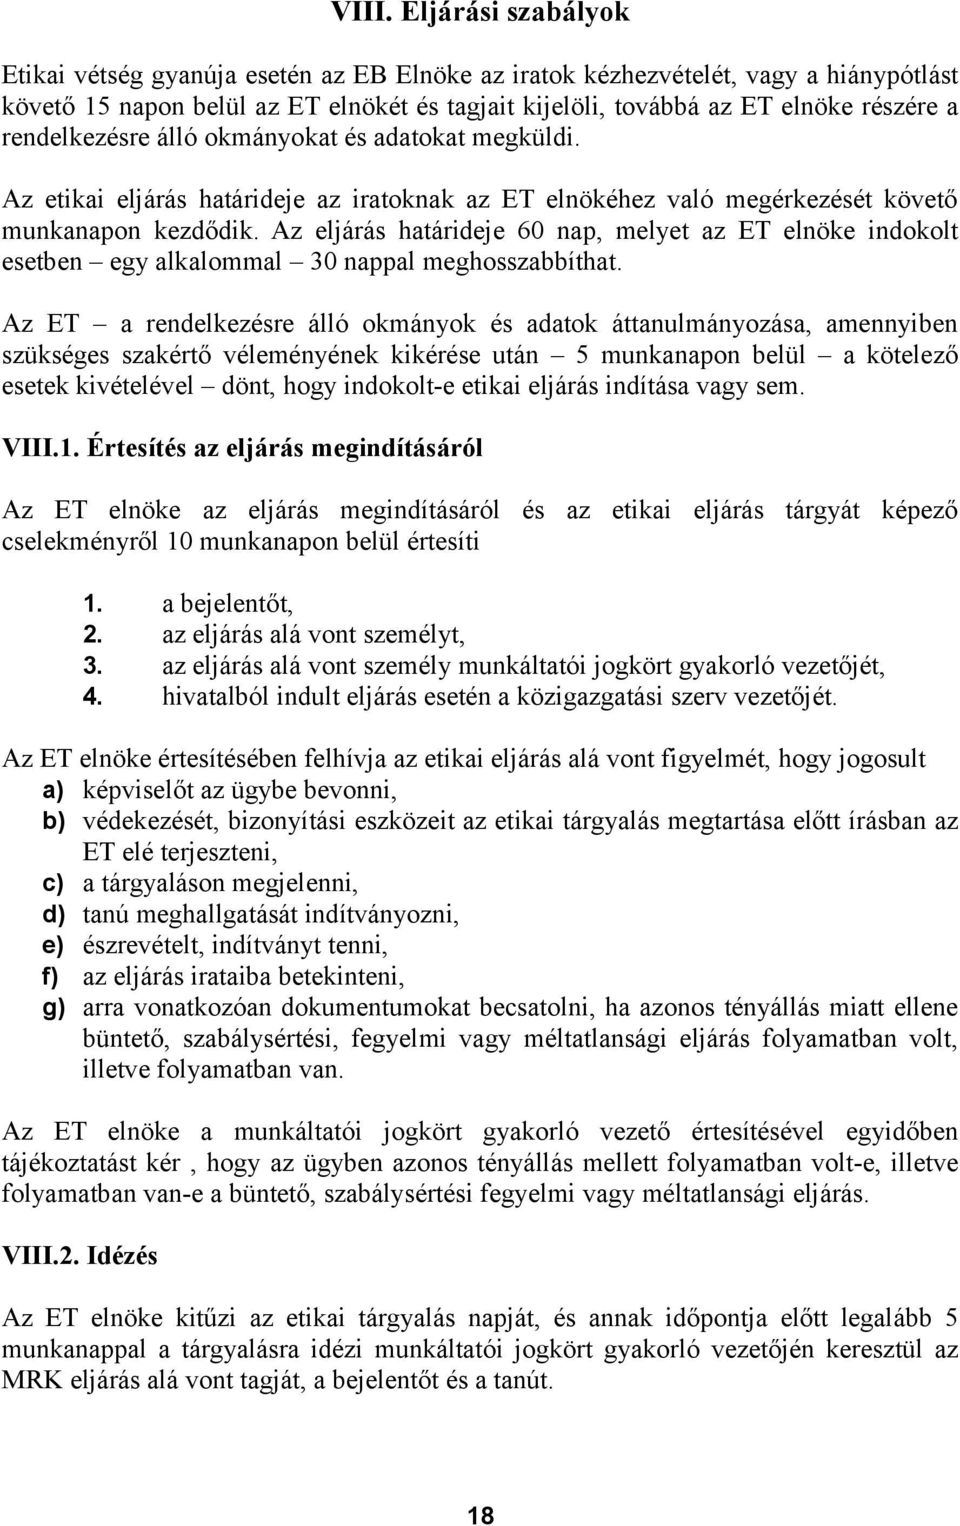 MAGYAR RENDVÉDELMI KAR. Rendvédelmi Hivatásetikai Kódex és Etikai Eljárási  Szabályzat - PDF Ingyenes letöltés